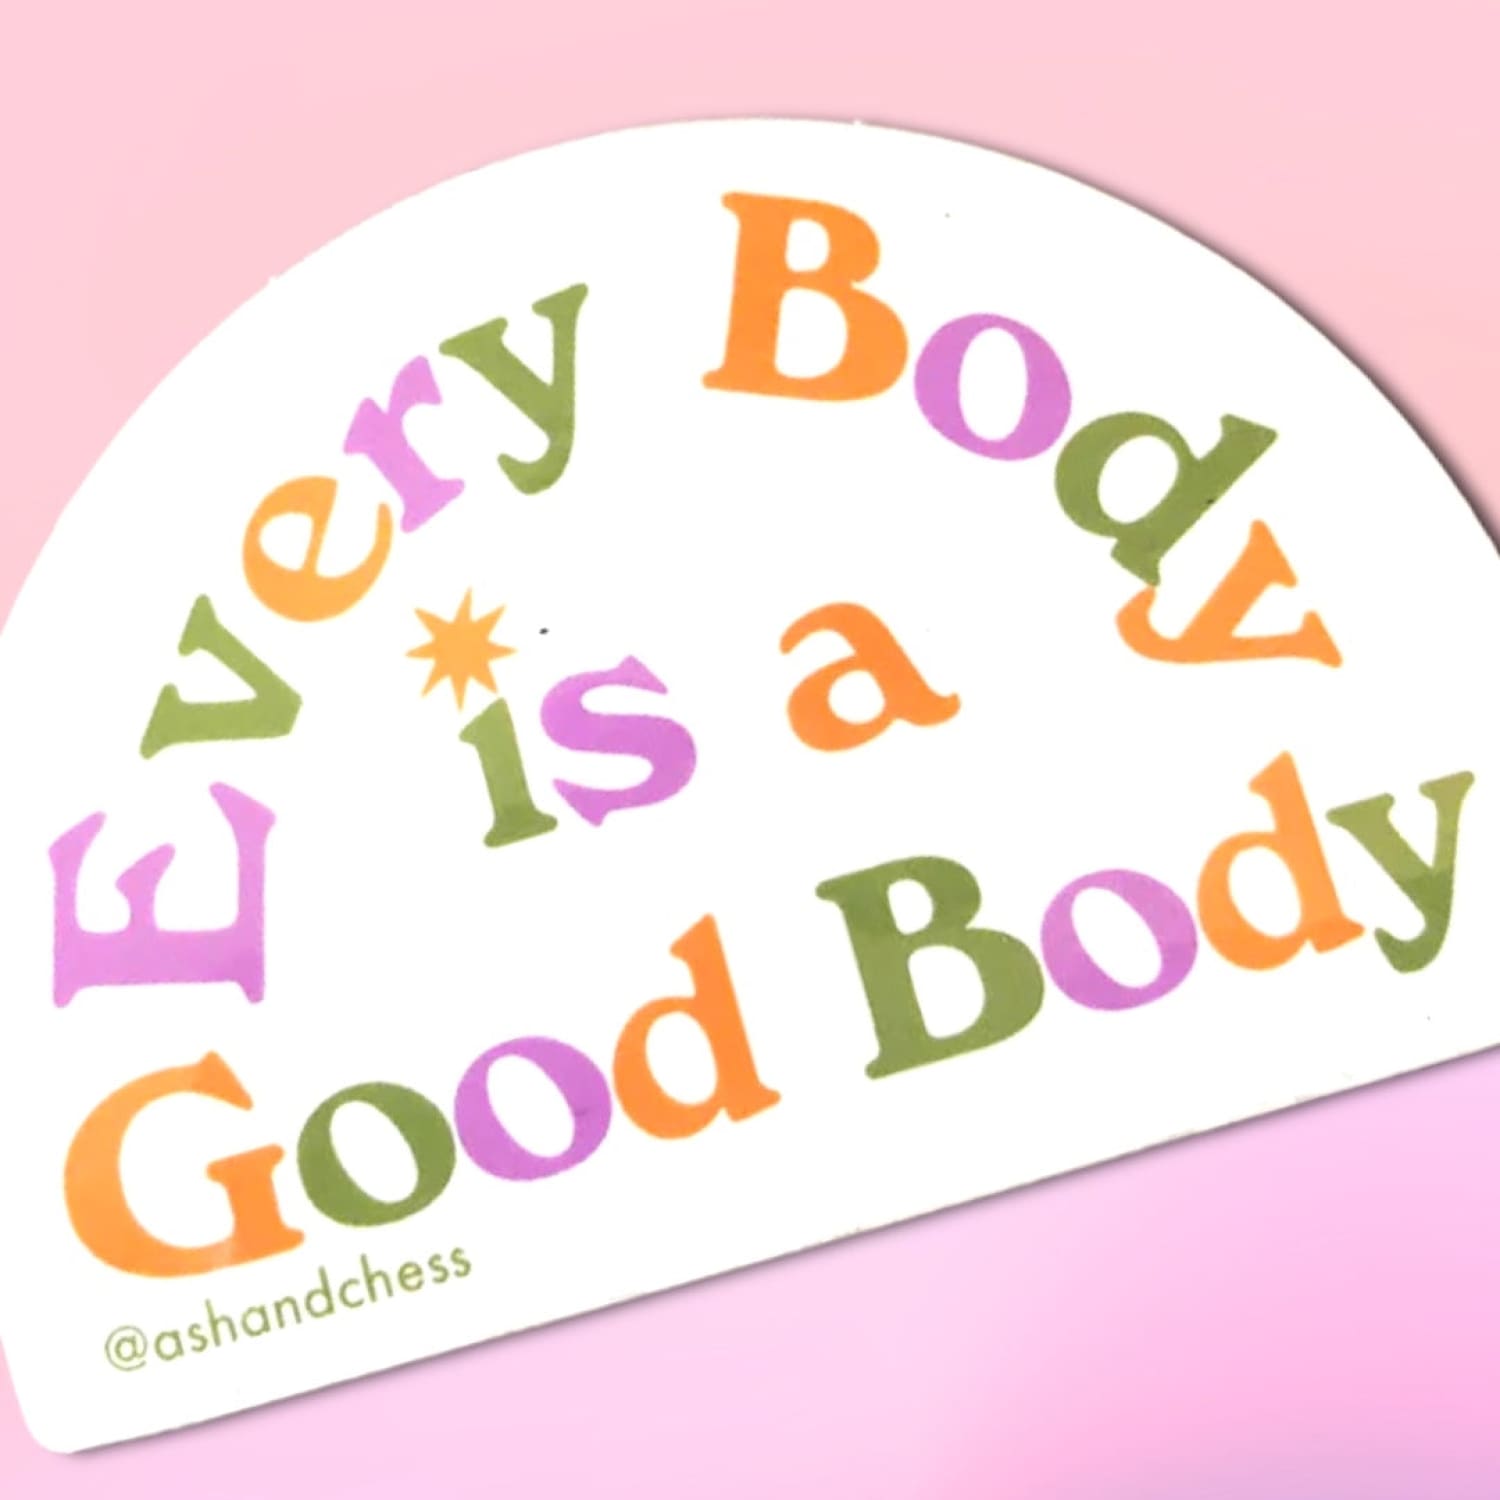 Everybody Is a Good Body Sticker Decorative Sticker -